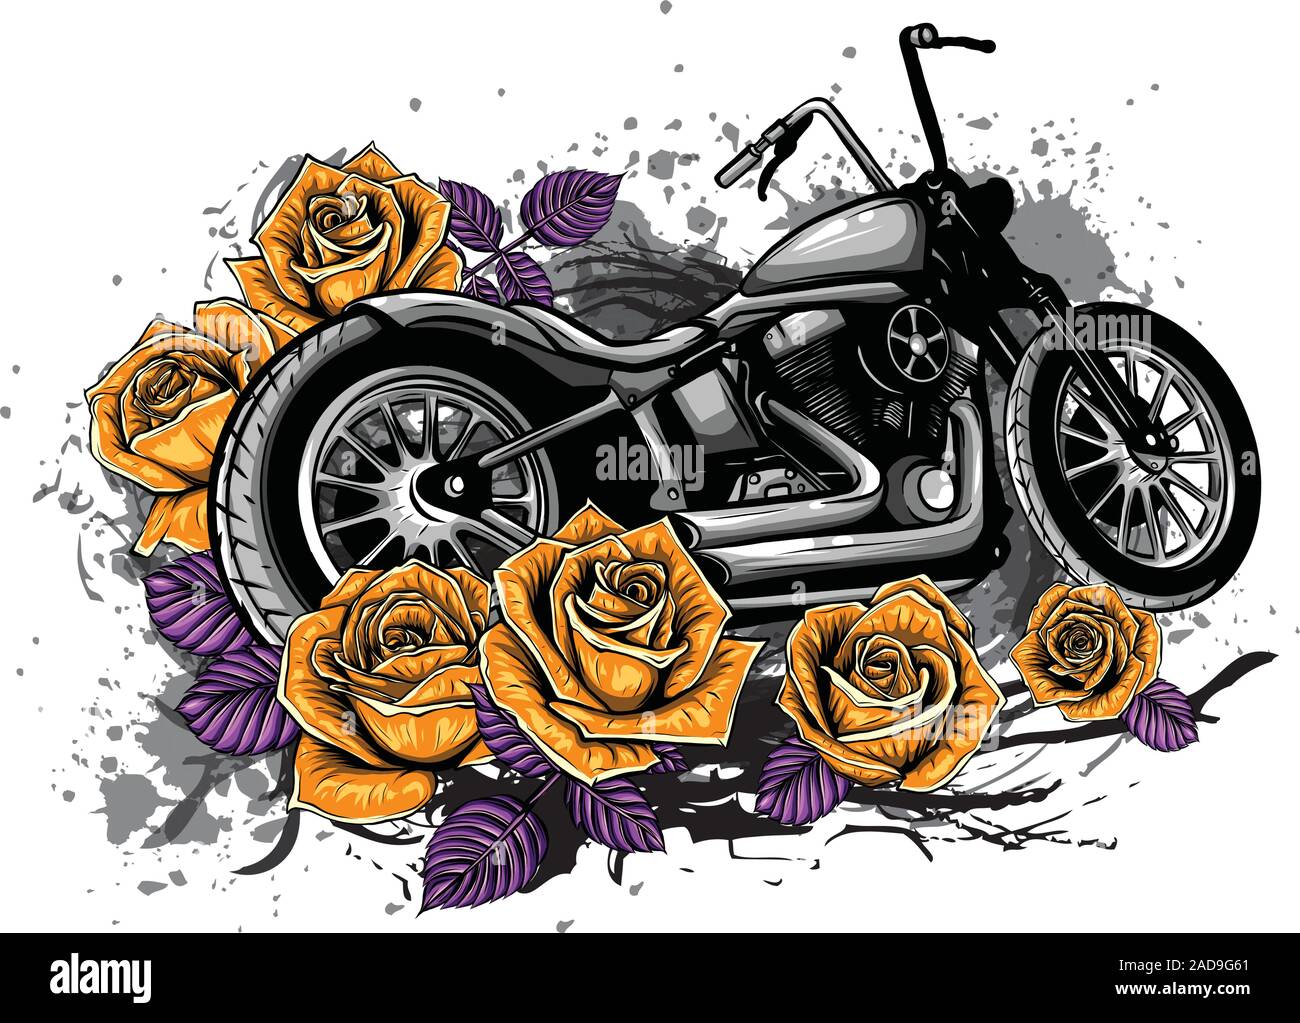 Illustation vector vintage moto du broyeur et les roses poster Illustration de Vecteur